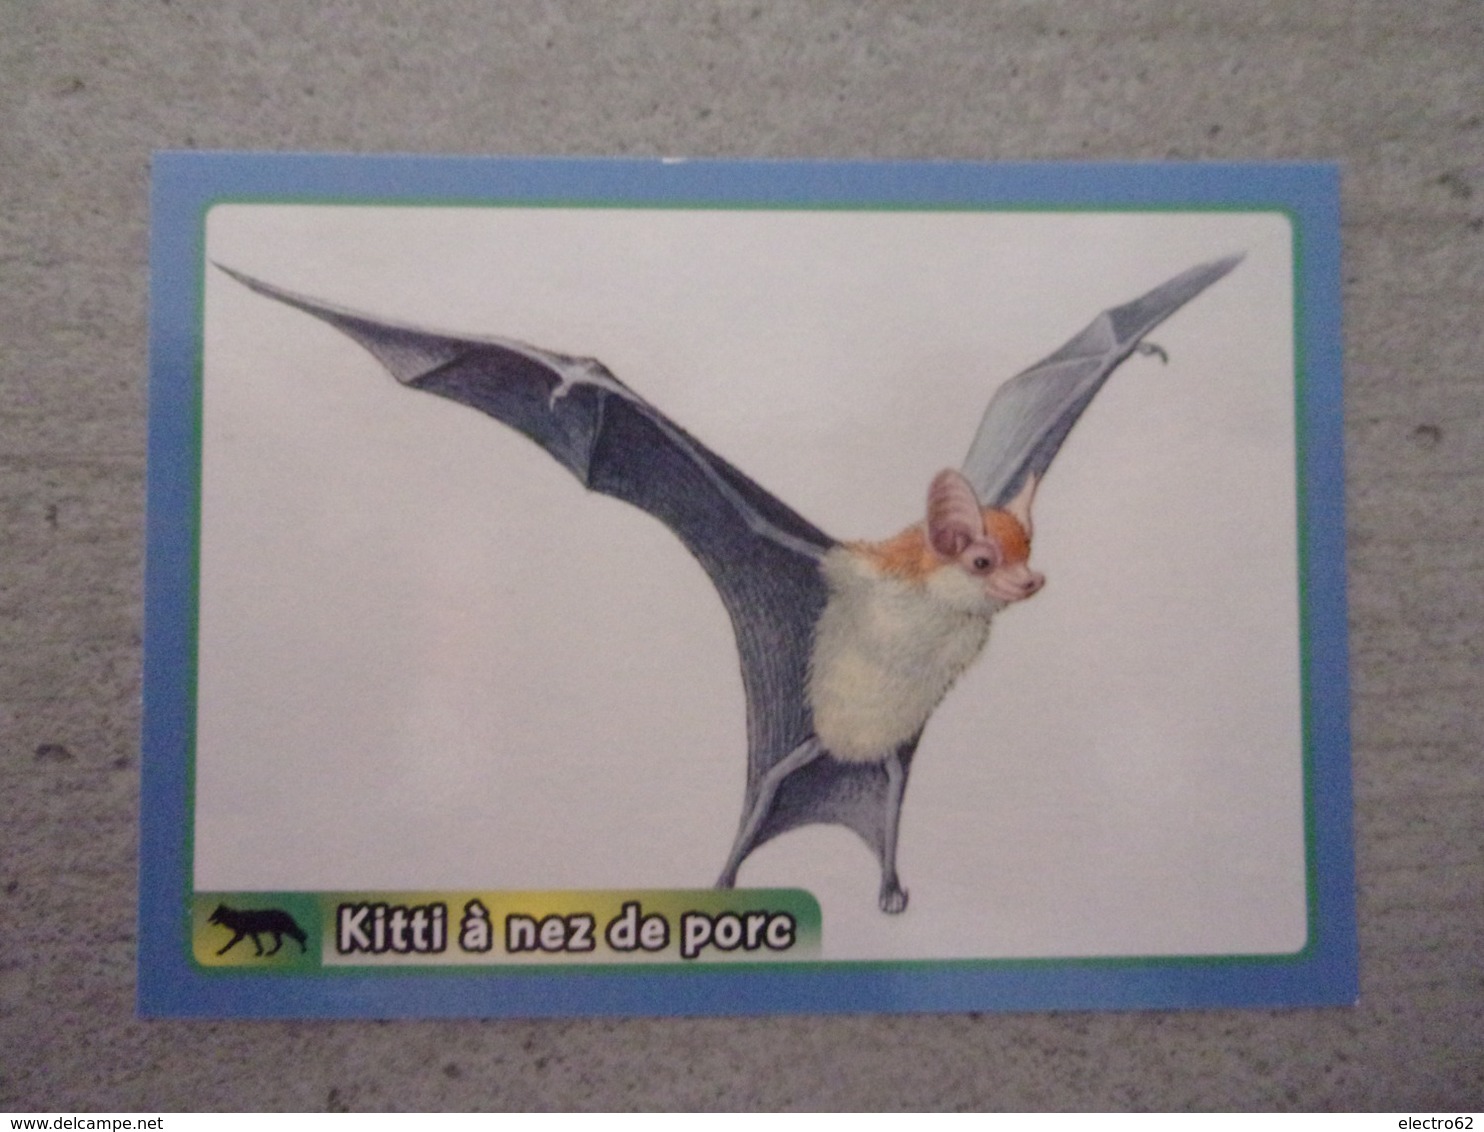 PANINI ANIMAL WORLD Animaux N°442 Chauve-souris Kitti à Nez De Porc Bumblebee Bat - Edition Française